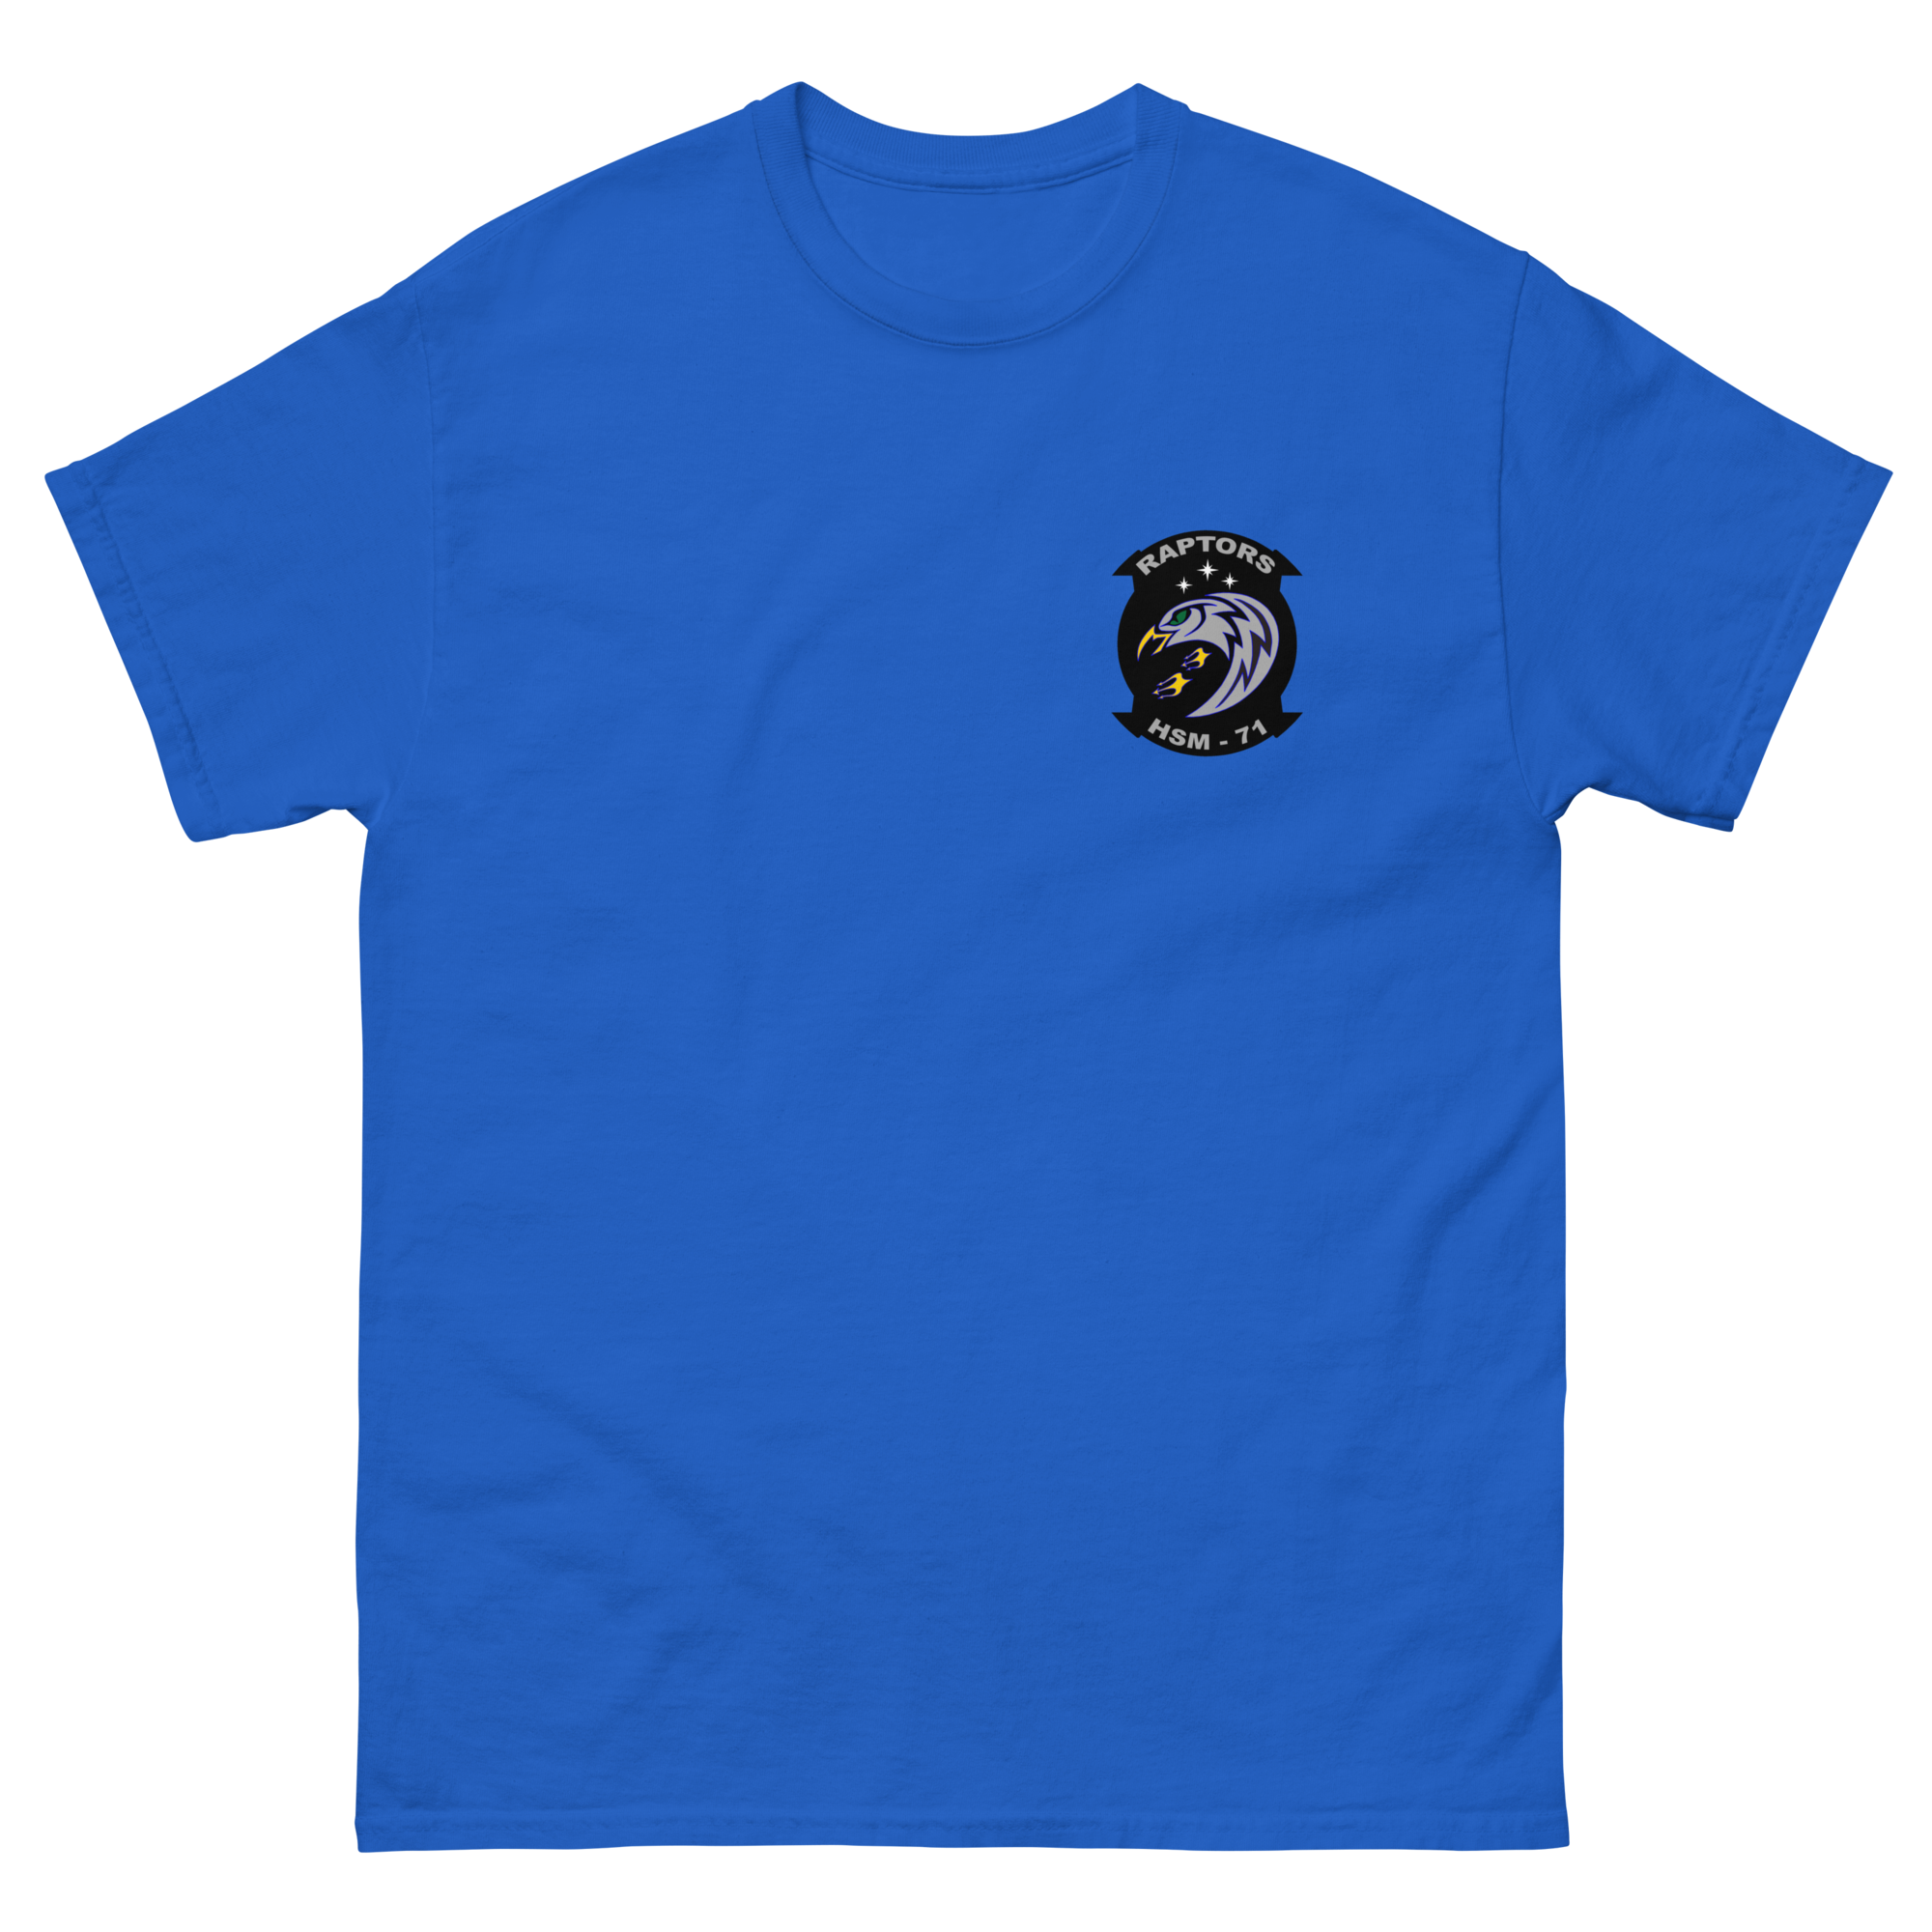 HSM-71 Raptors Squadron Crest Shirt